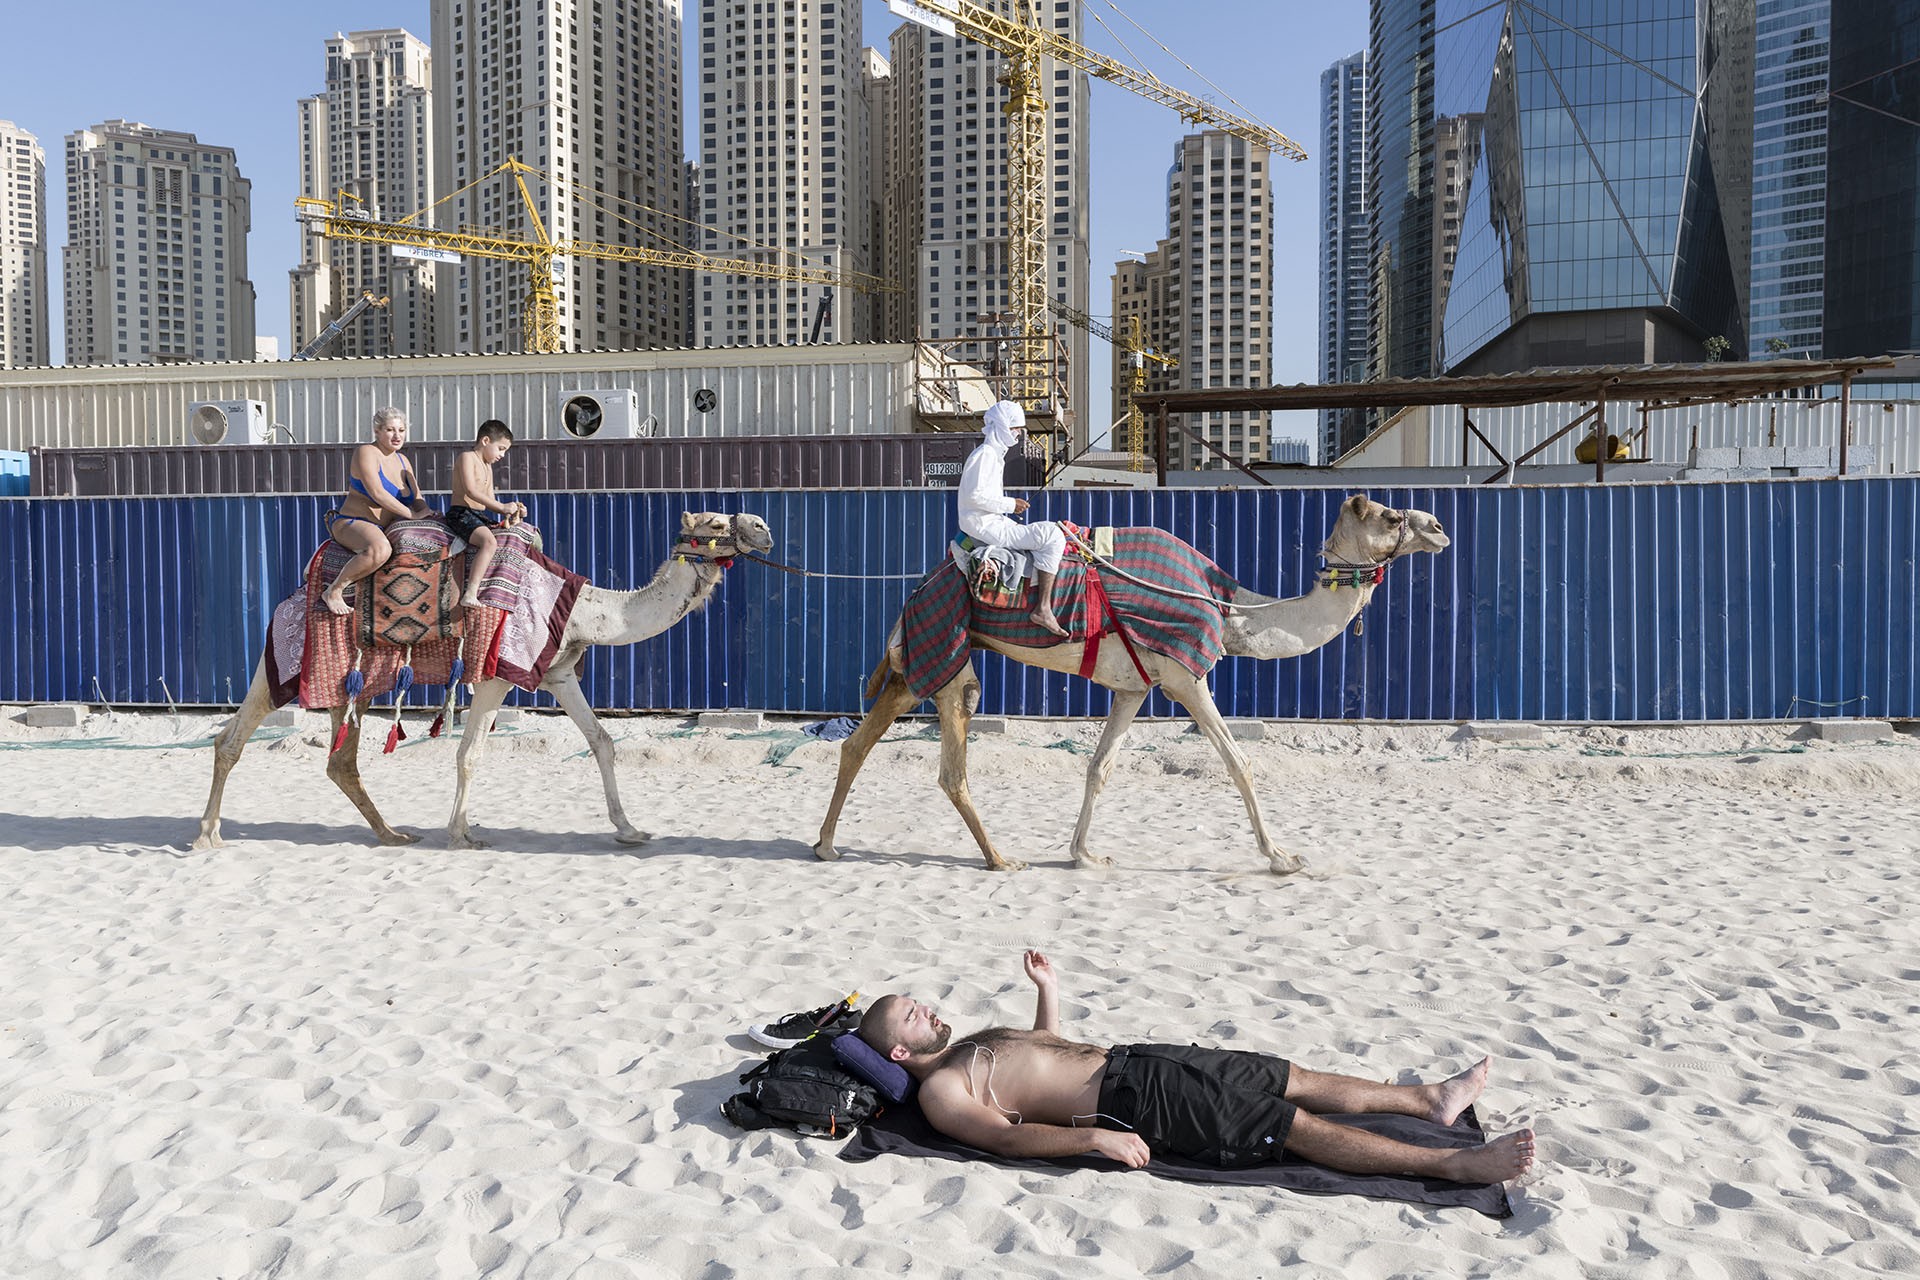 Катание на верблюдах. Из серии Сад наслаждений. Дубай, ОАЭ, 30 декабря 2017 года. Фотограф Ник Ханнес